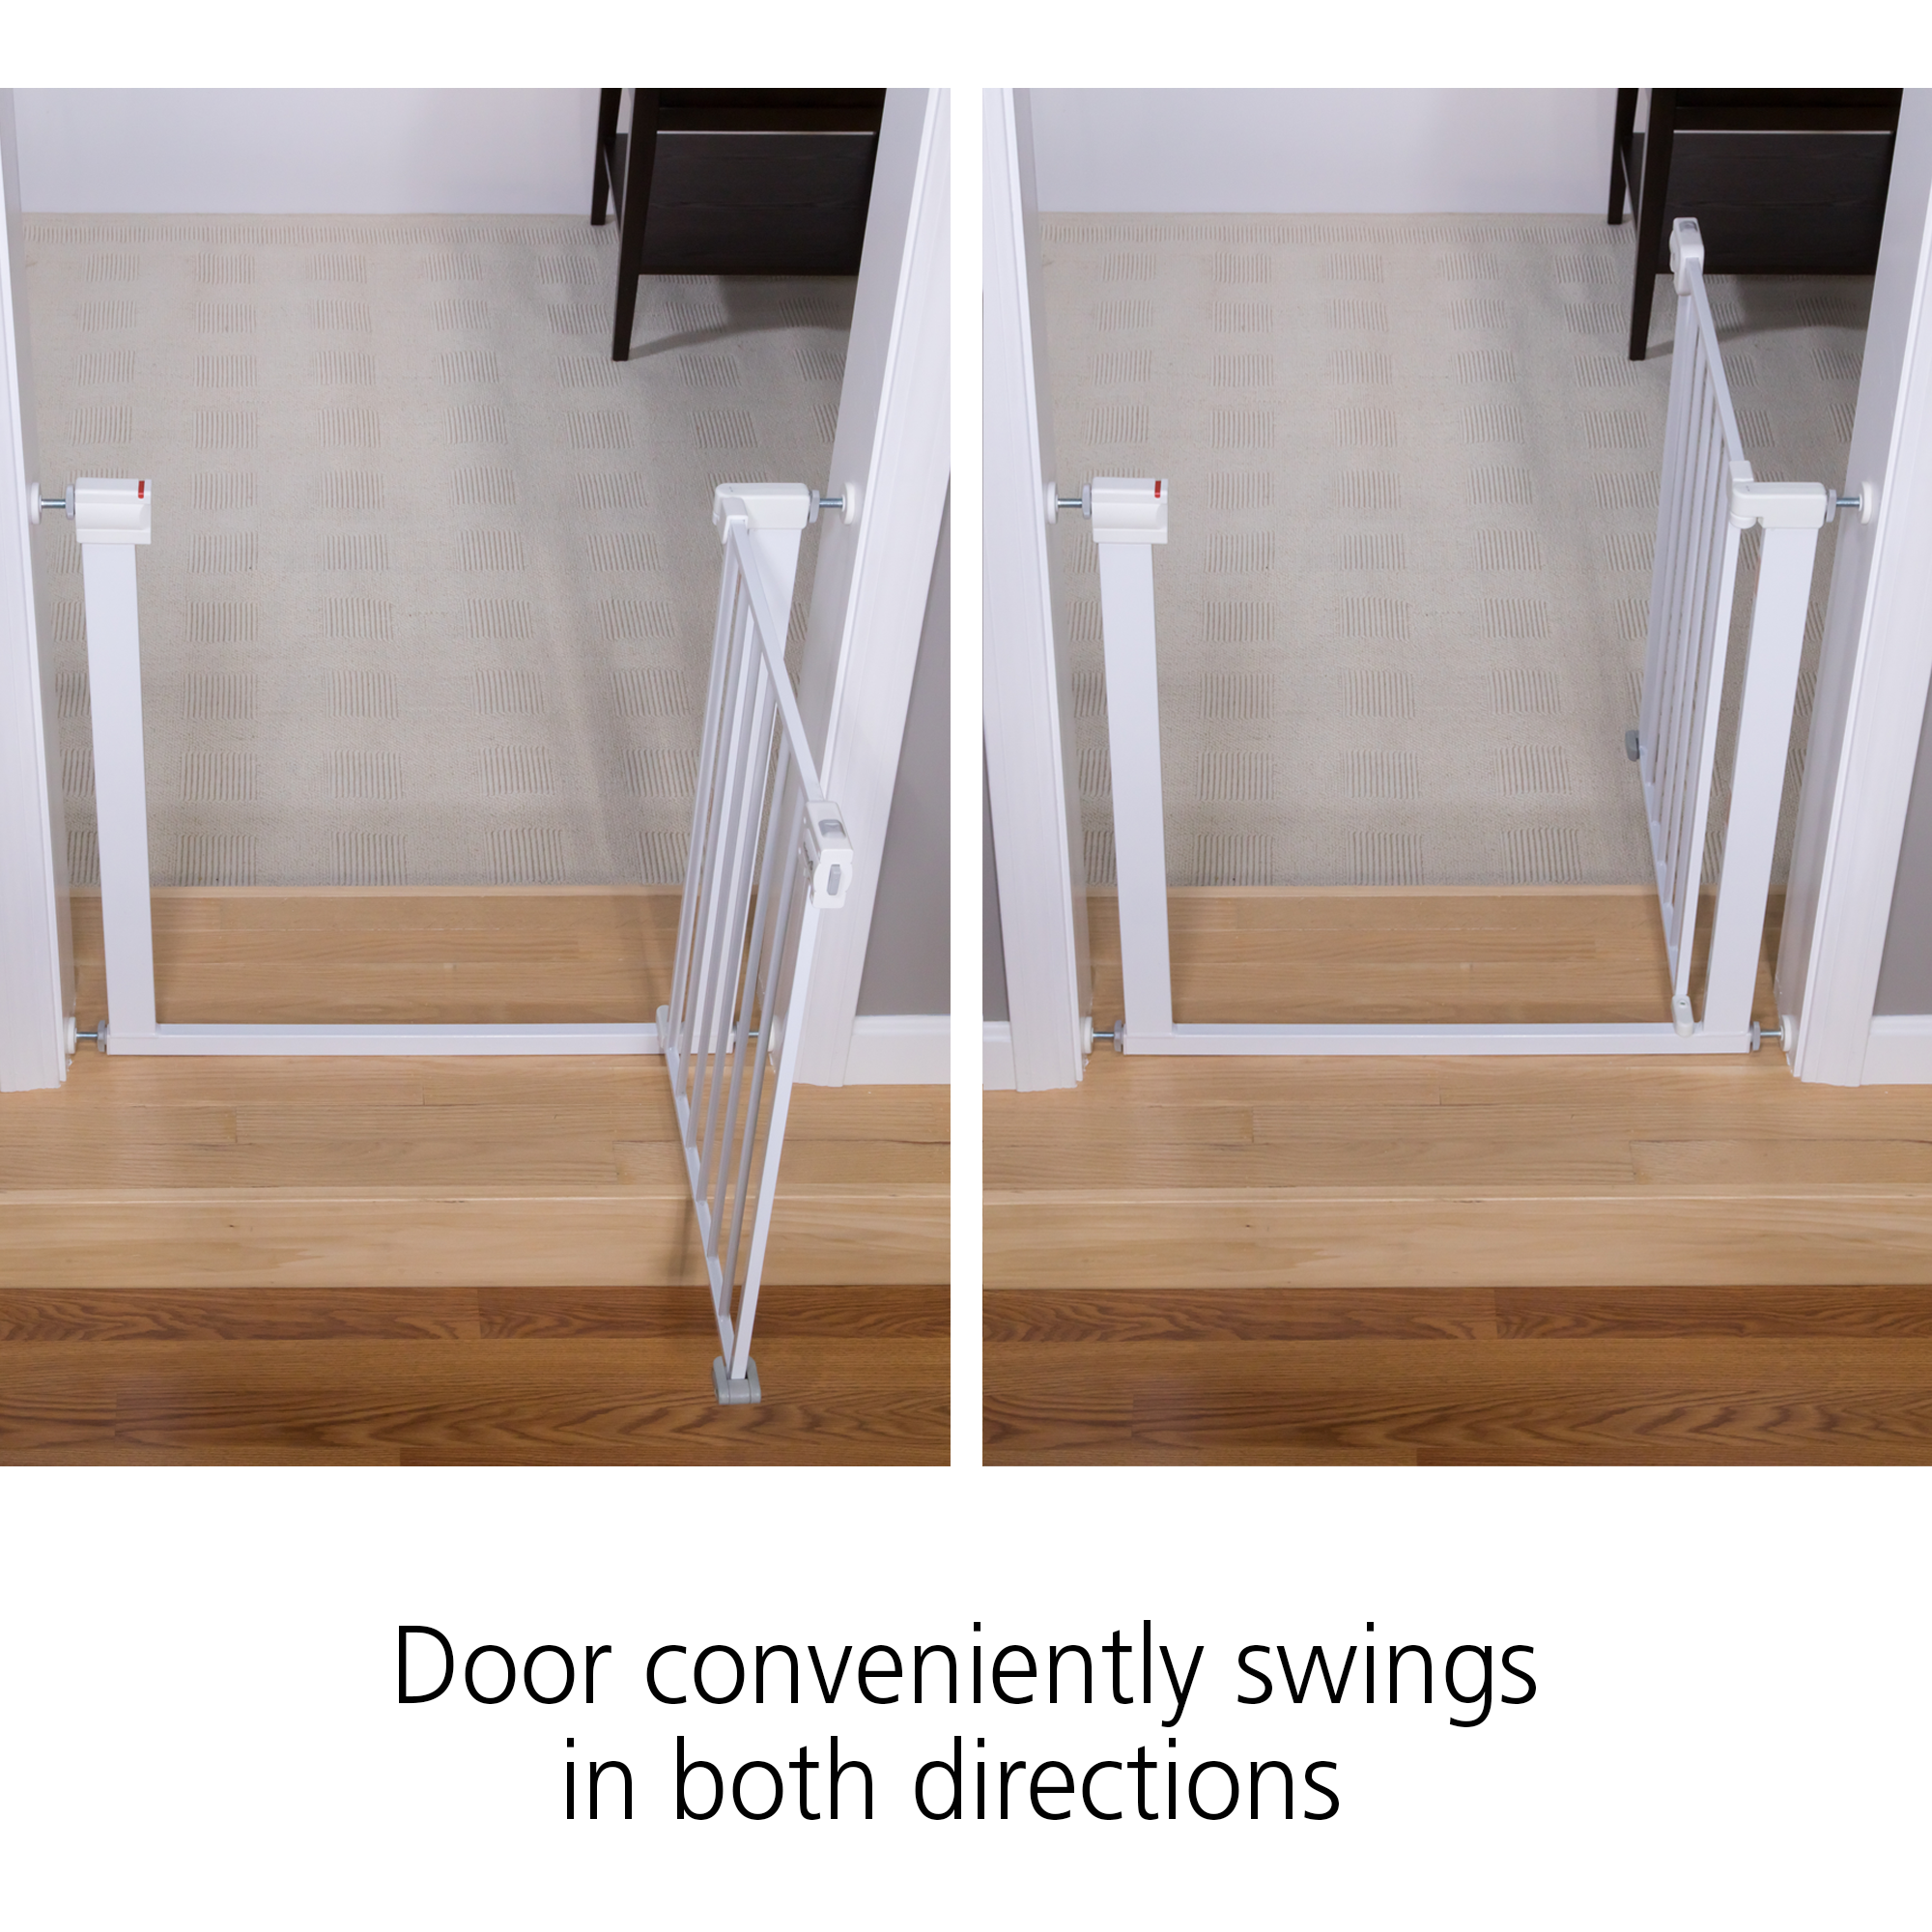 Door conveniently swings in both directions